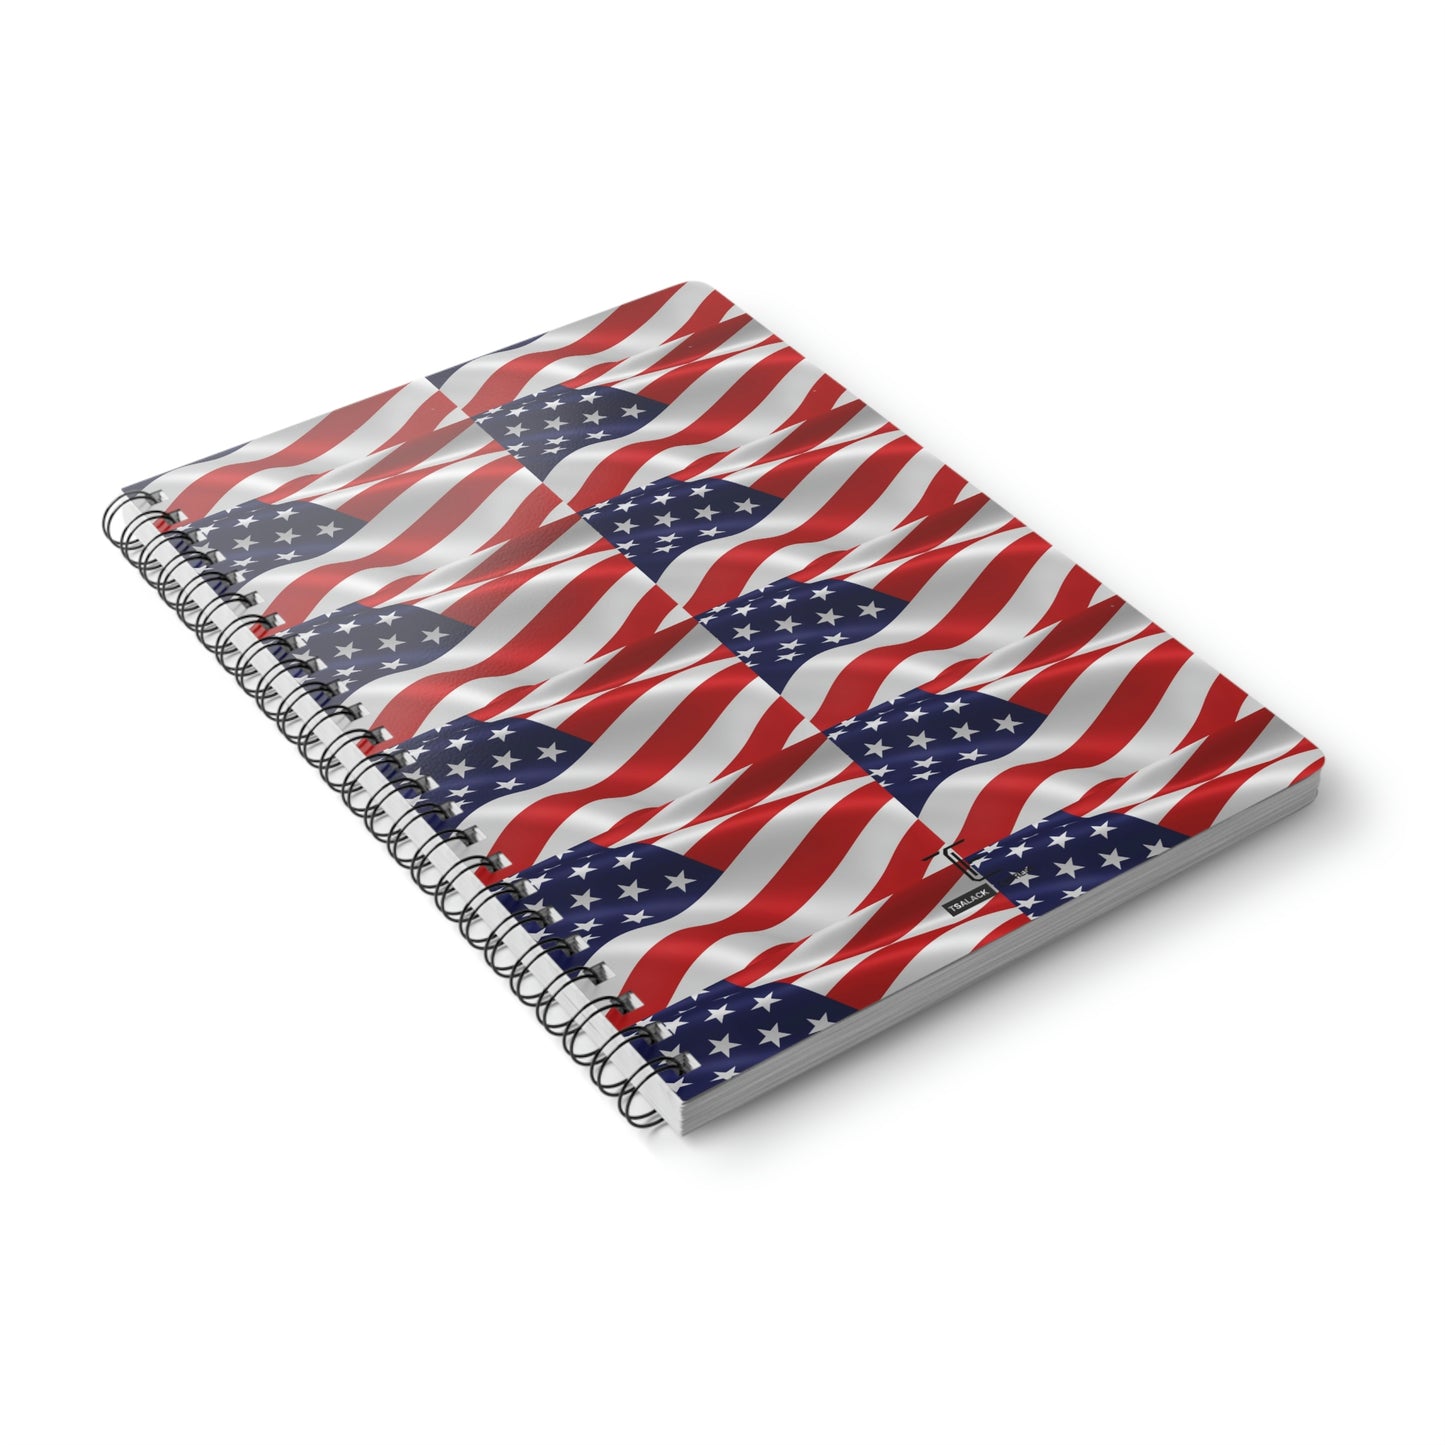 Tsalack Express Flag Wirobound Softcover Notebook, A5